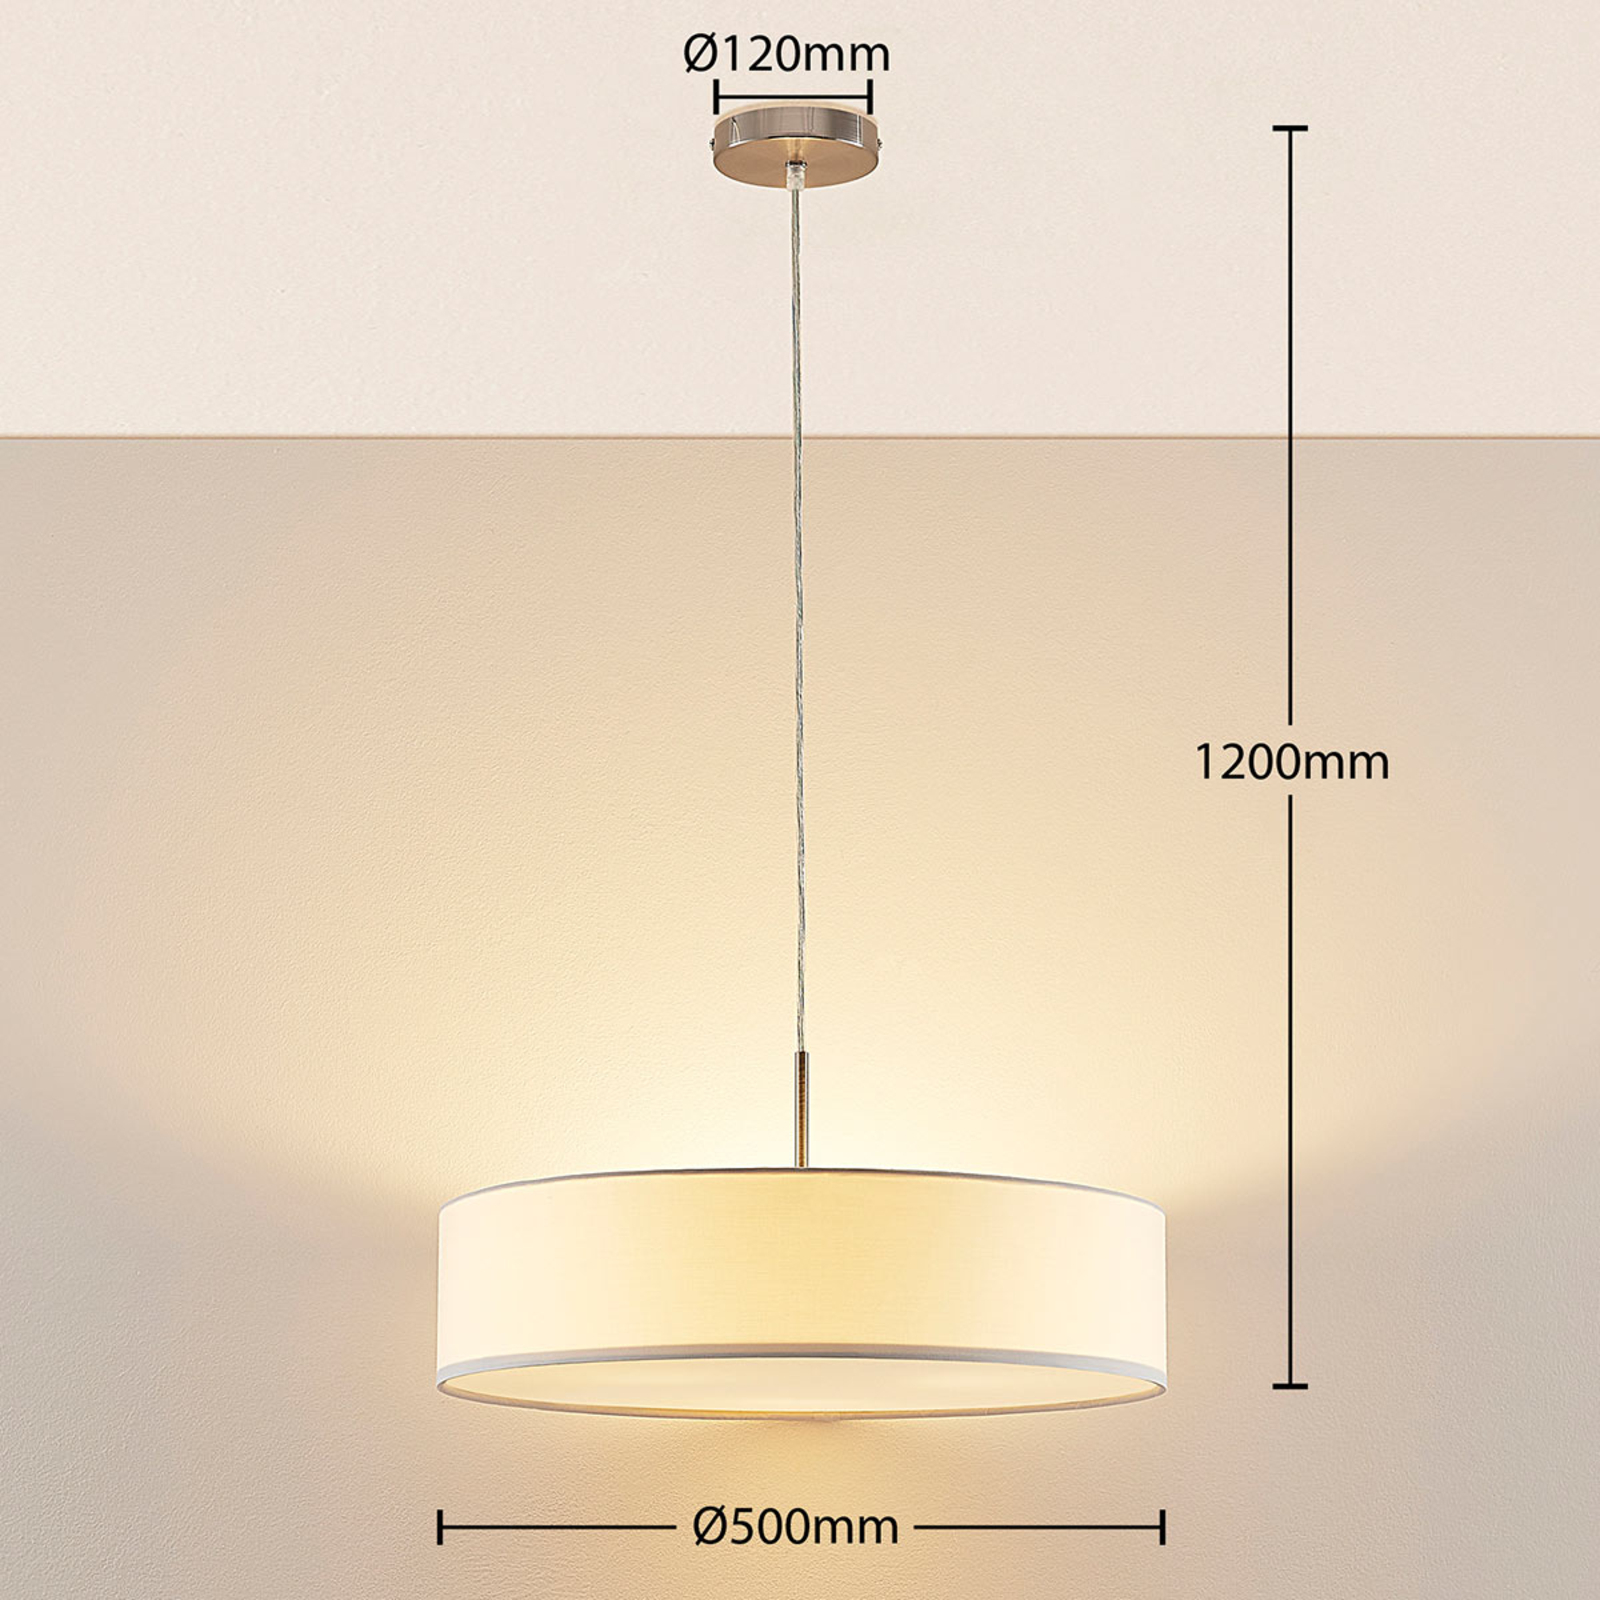 Sebatin hængelampe, E27, 50 cm, hvid